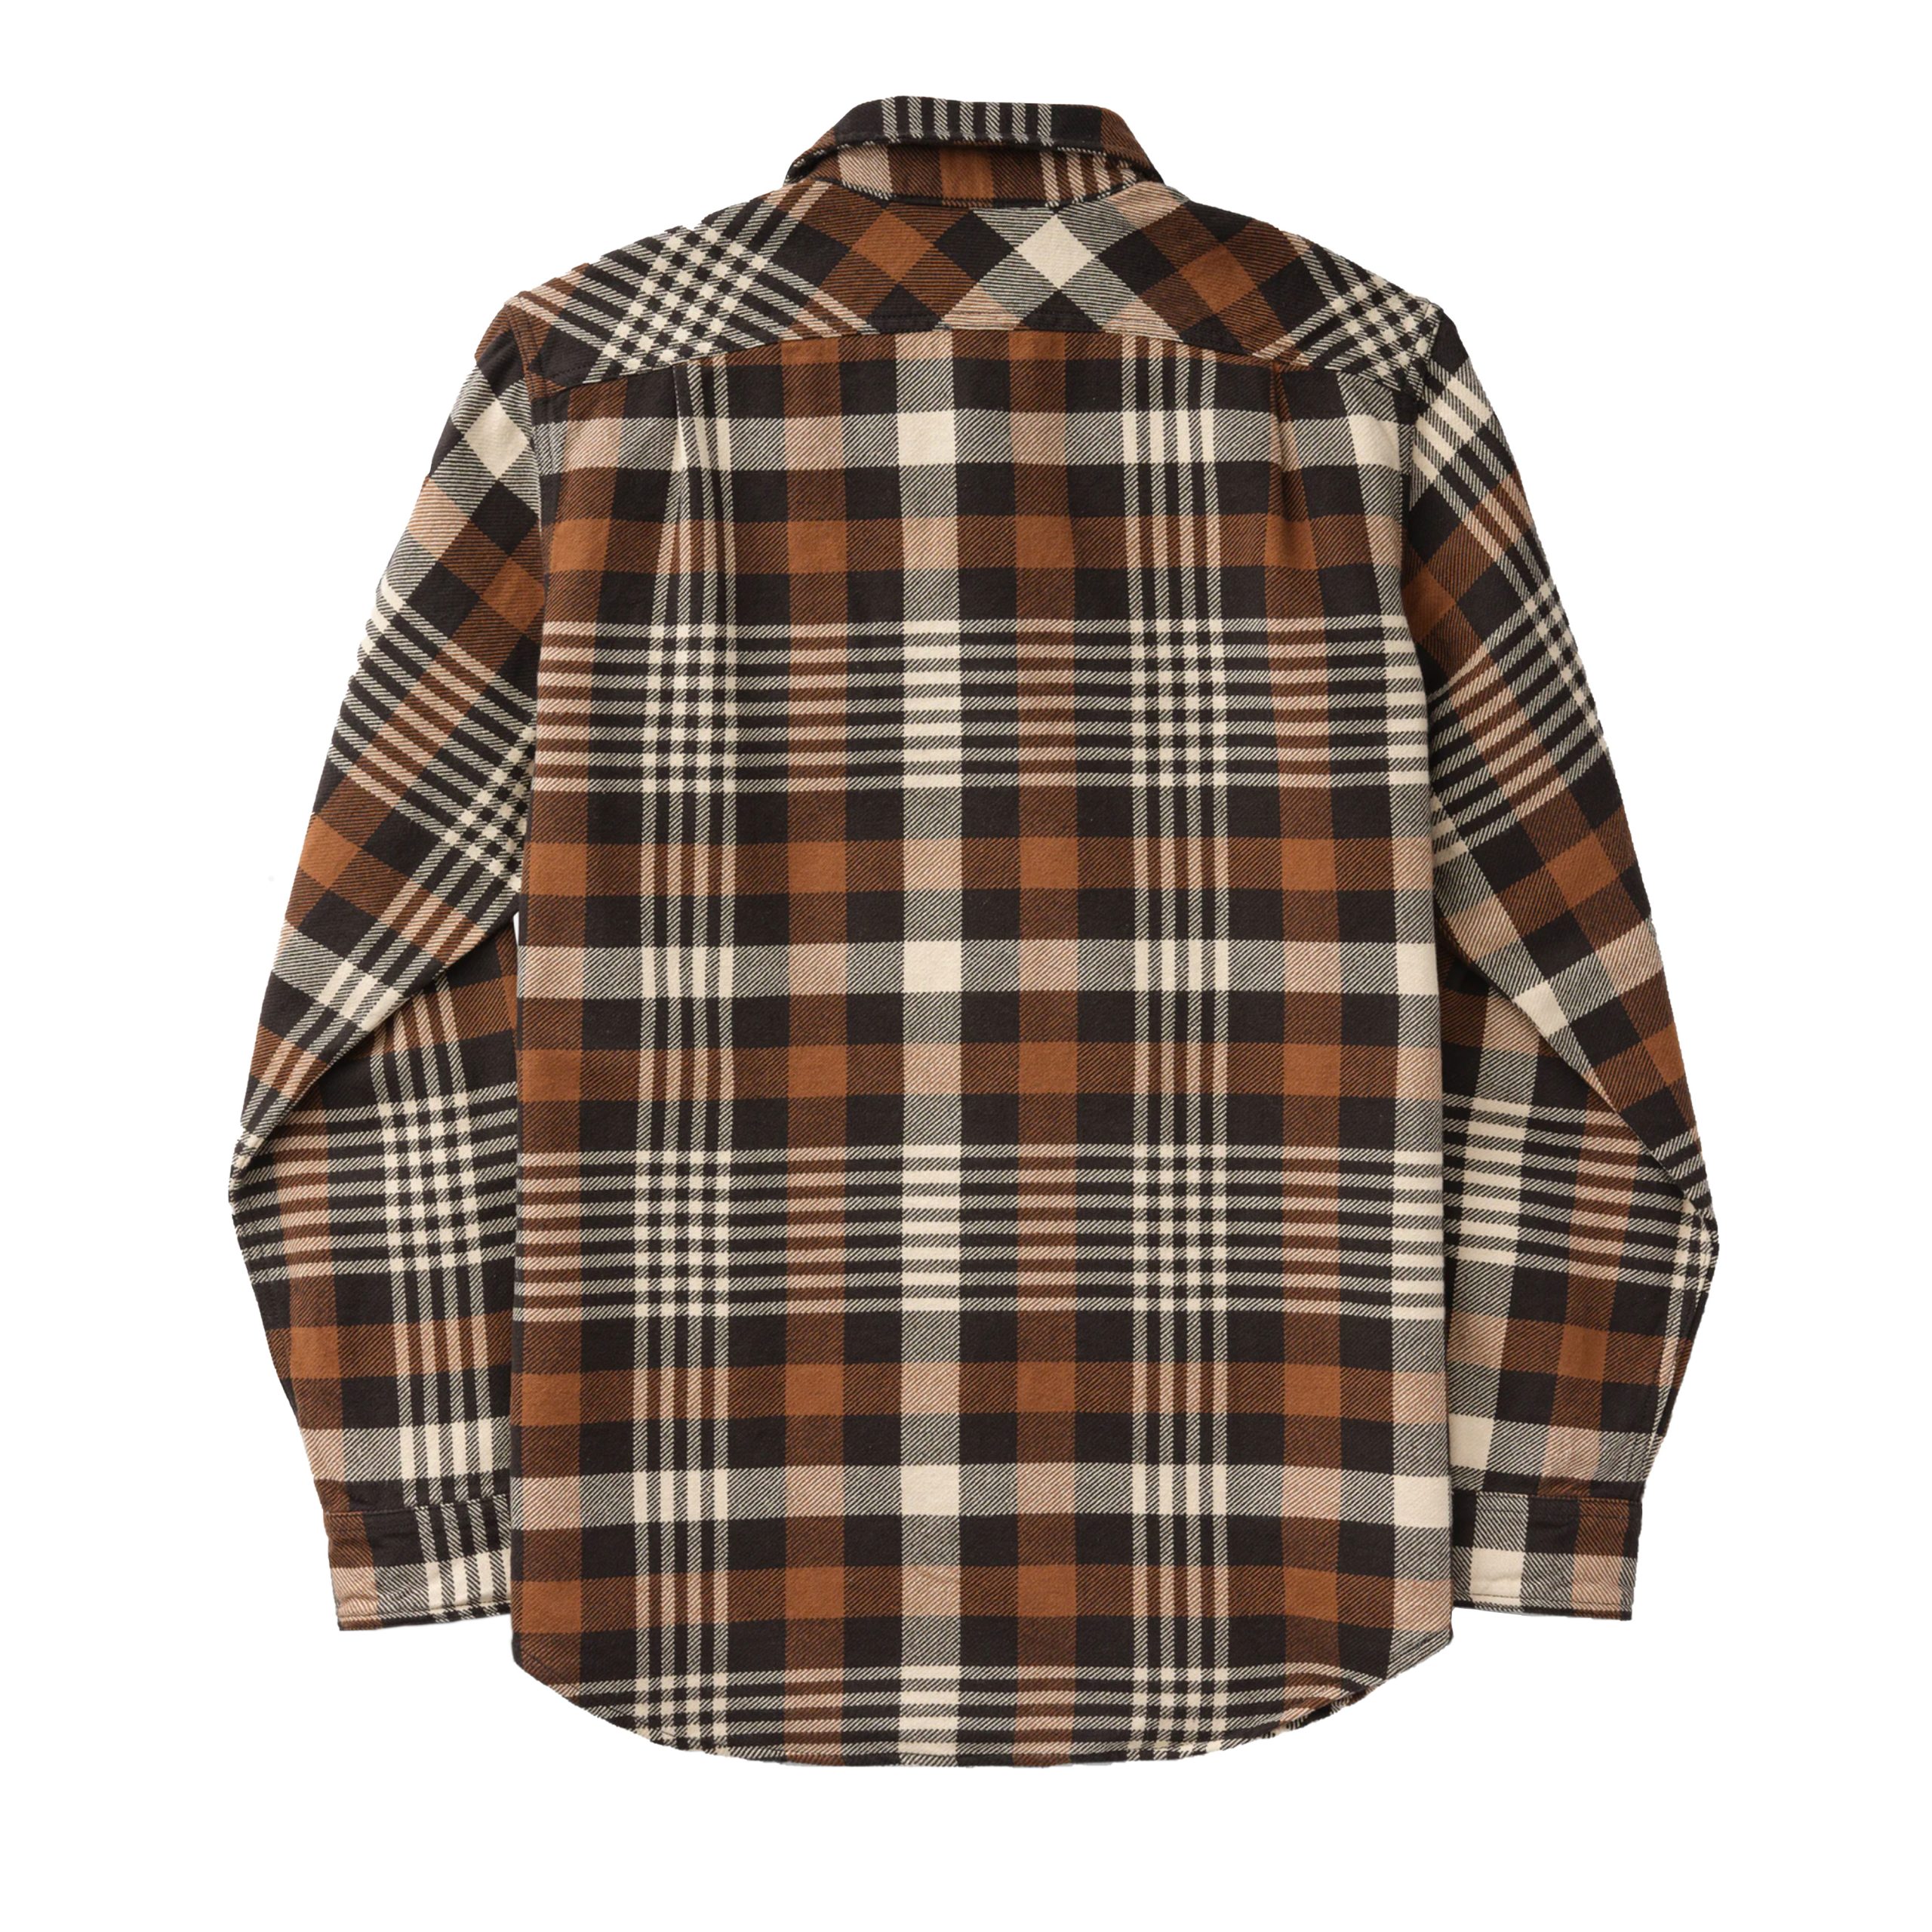 Vintage Flannel Work Shirt Black/Brown/Cream – B74